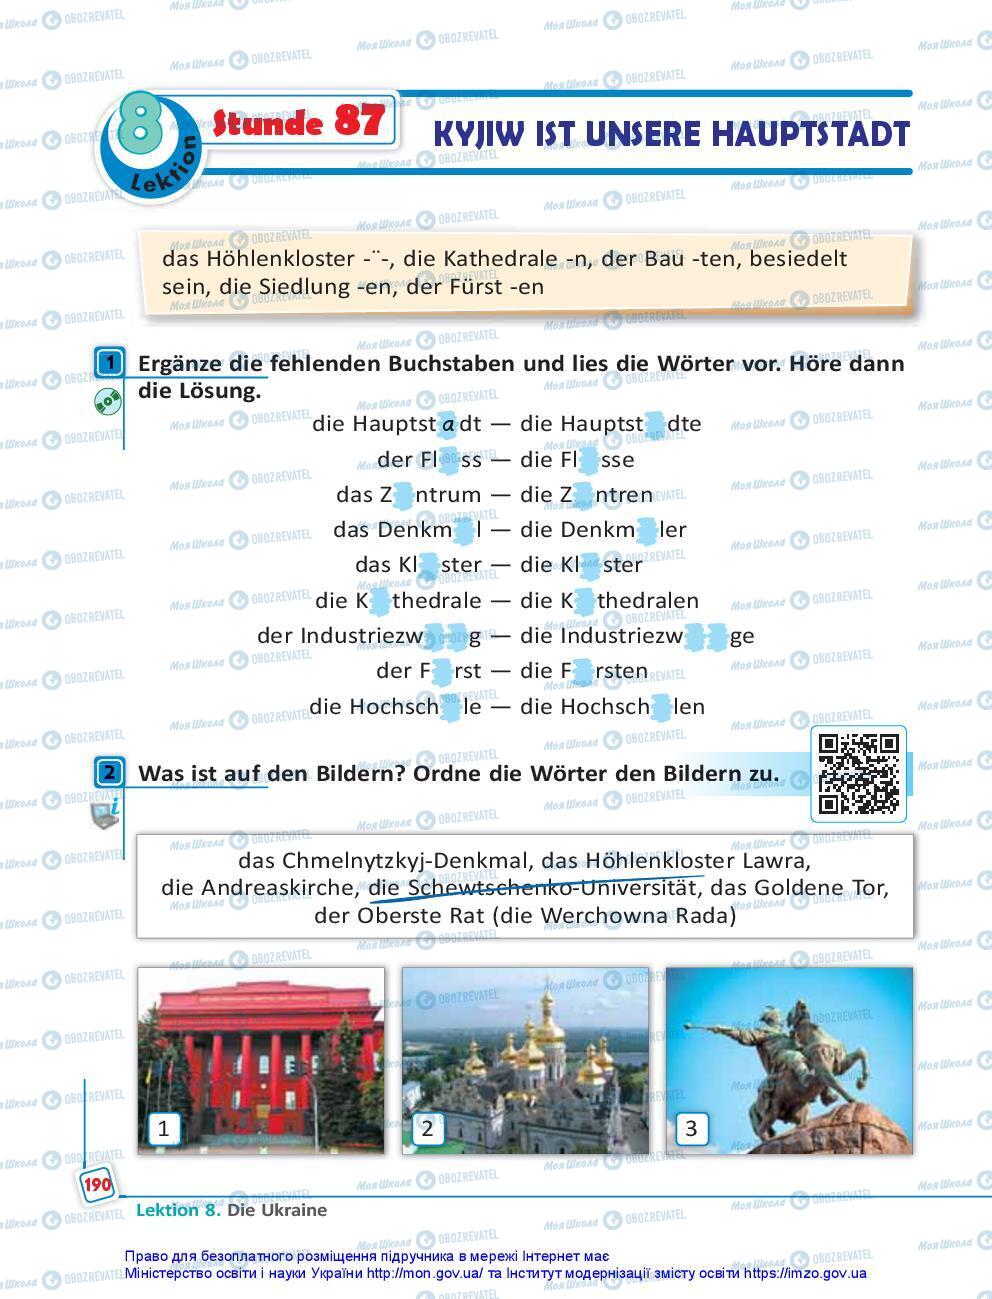 Підручники Німецька мова 7 клас сторінка 190